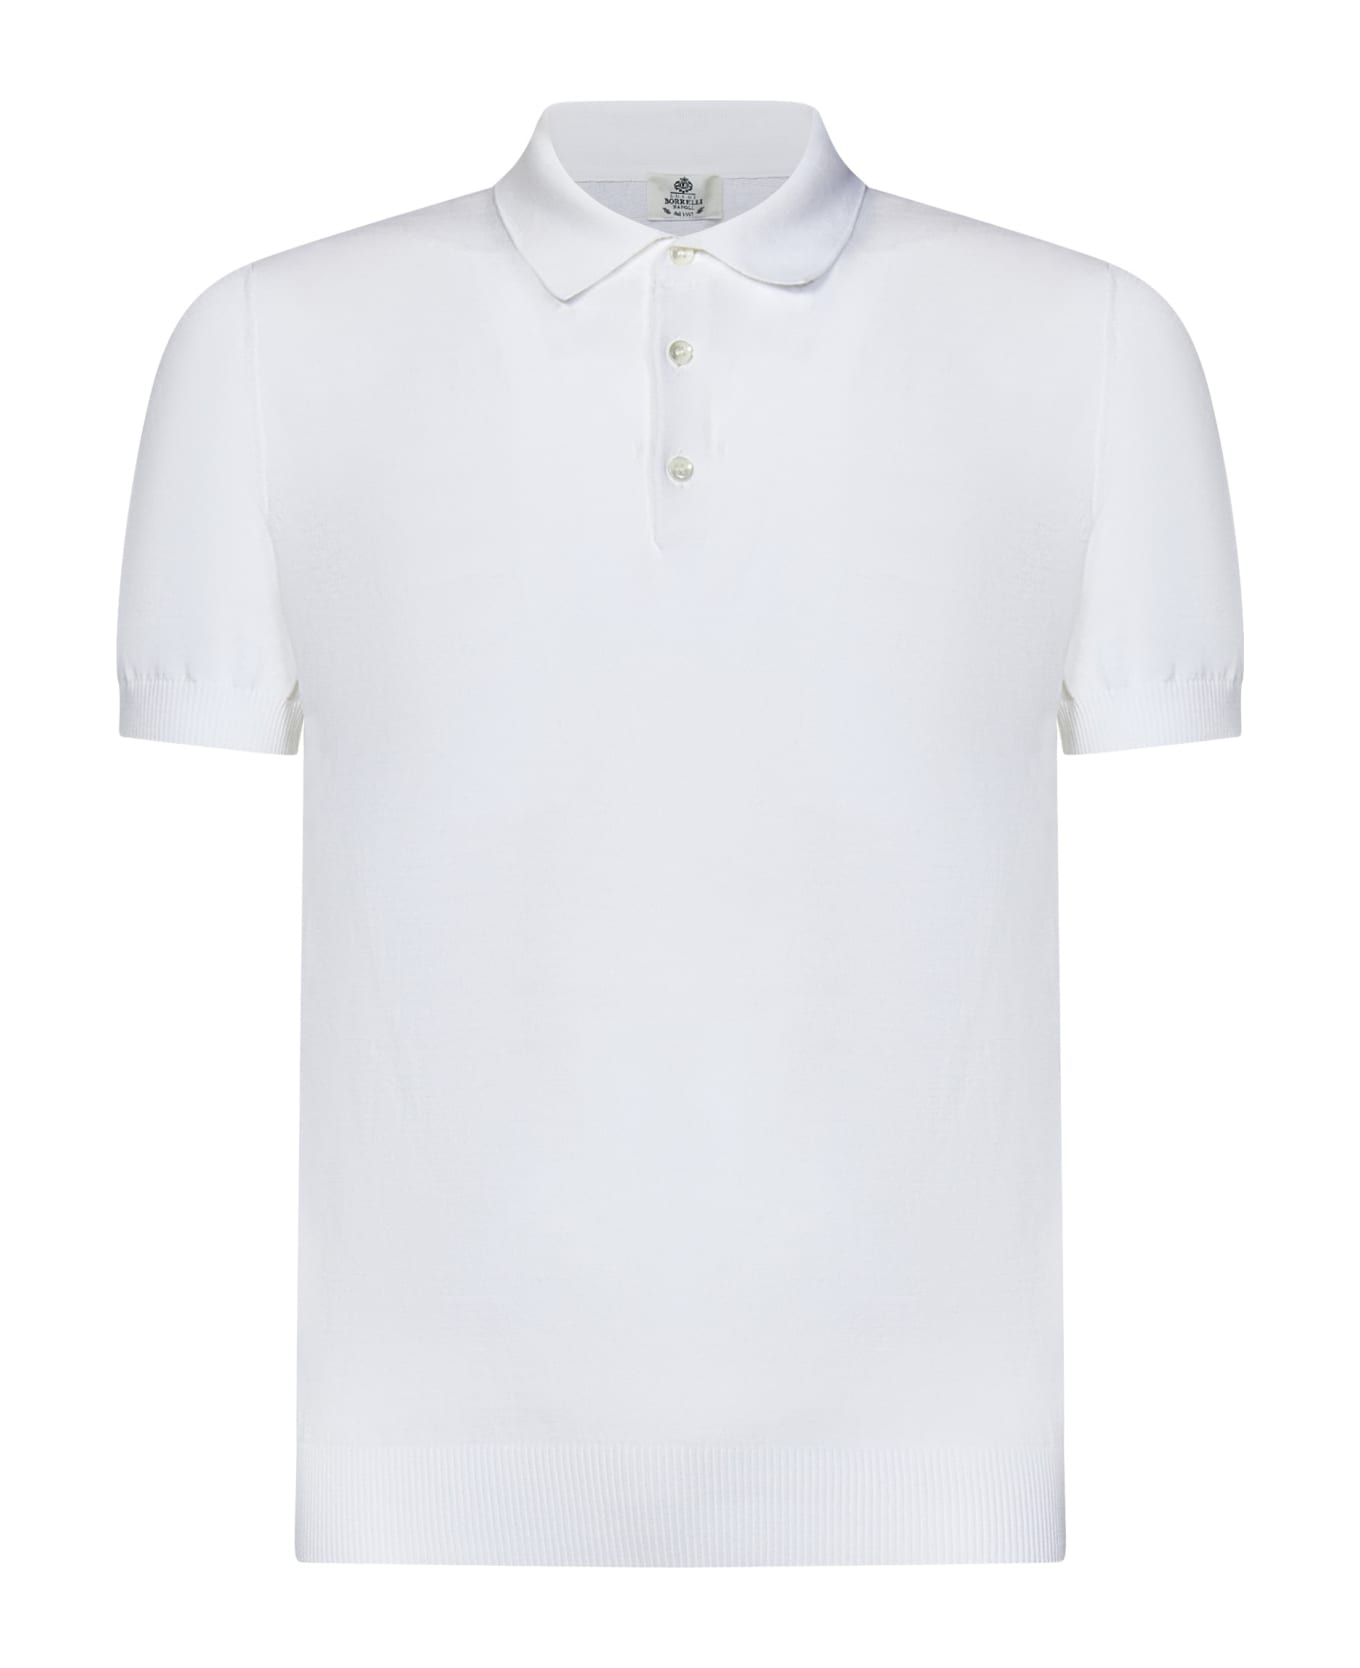 Luigi Borrelli Polo Shirt - White ポロシャツ